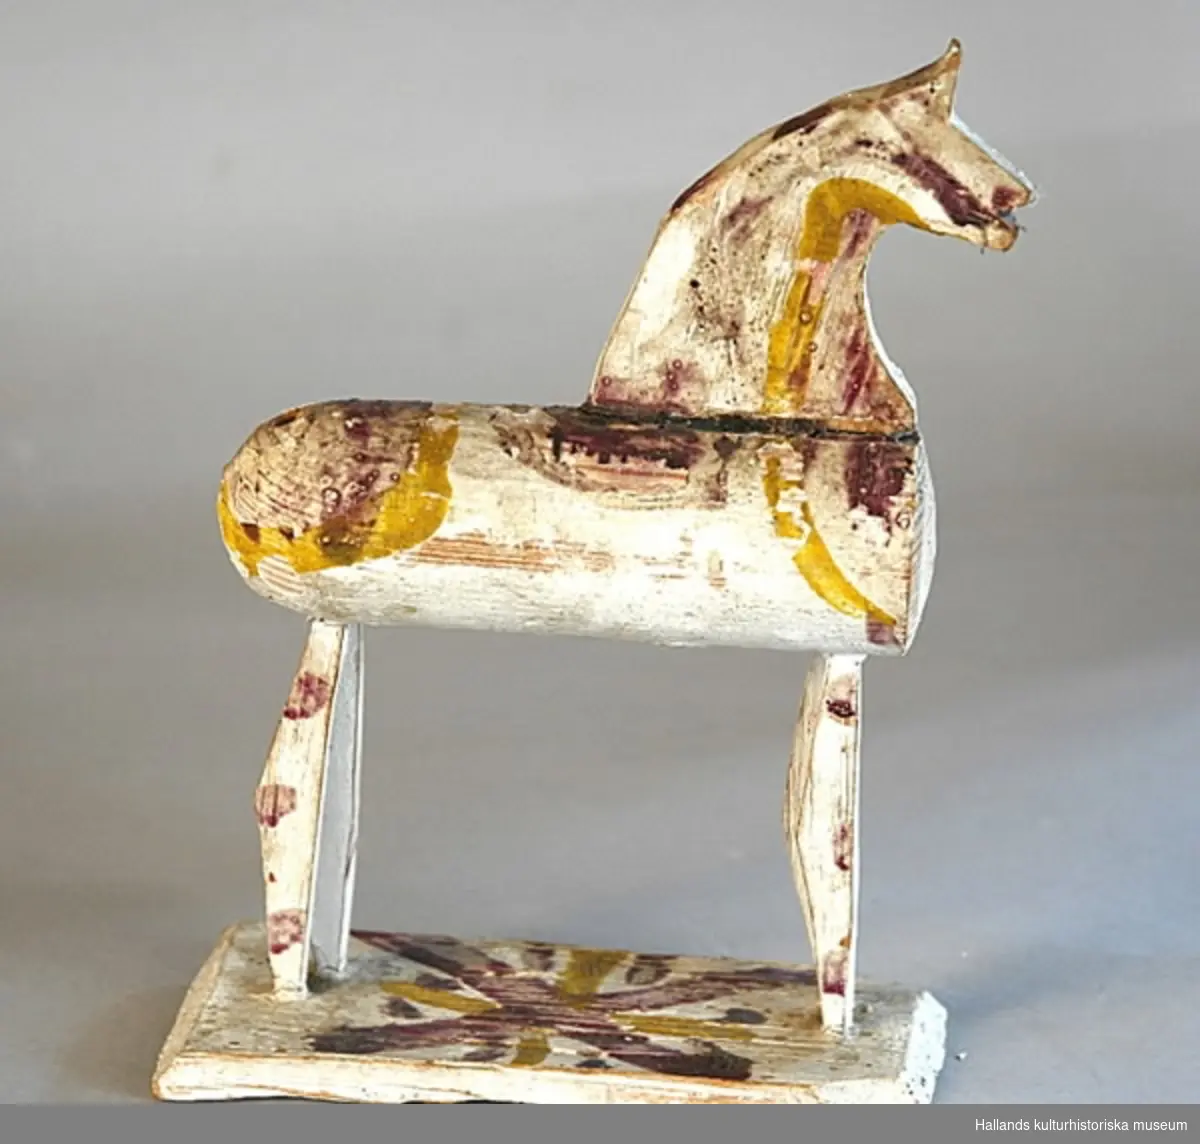 Leksakshäst av trä, vitmålad med mönster i gult och gredelint. Kroppen cylindrisk, svansen har fallit bort. Huvudet en profil utskuren i en träskiva, benen likaså. Hästen står på en bräda.